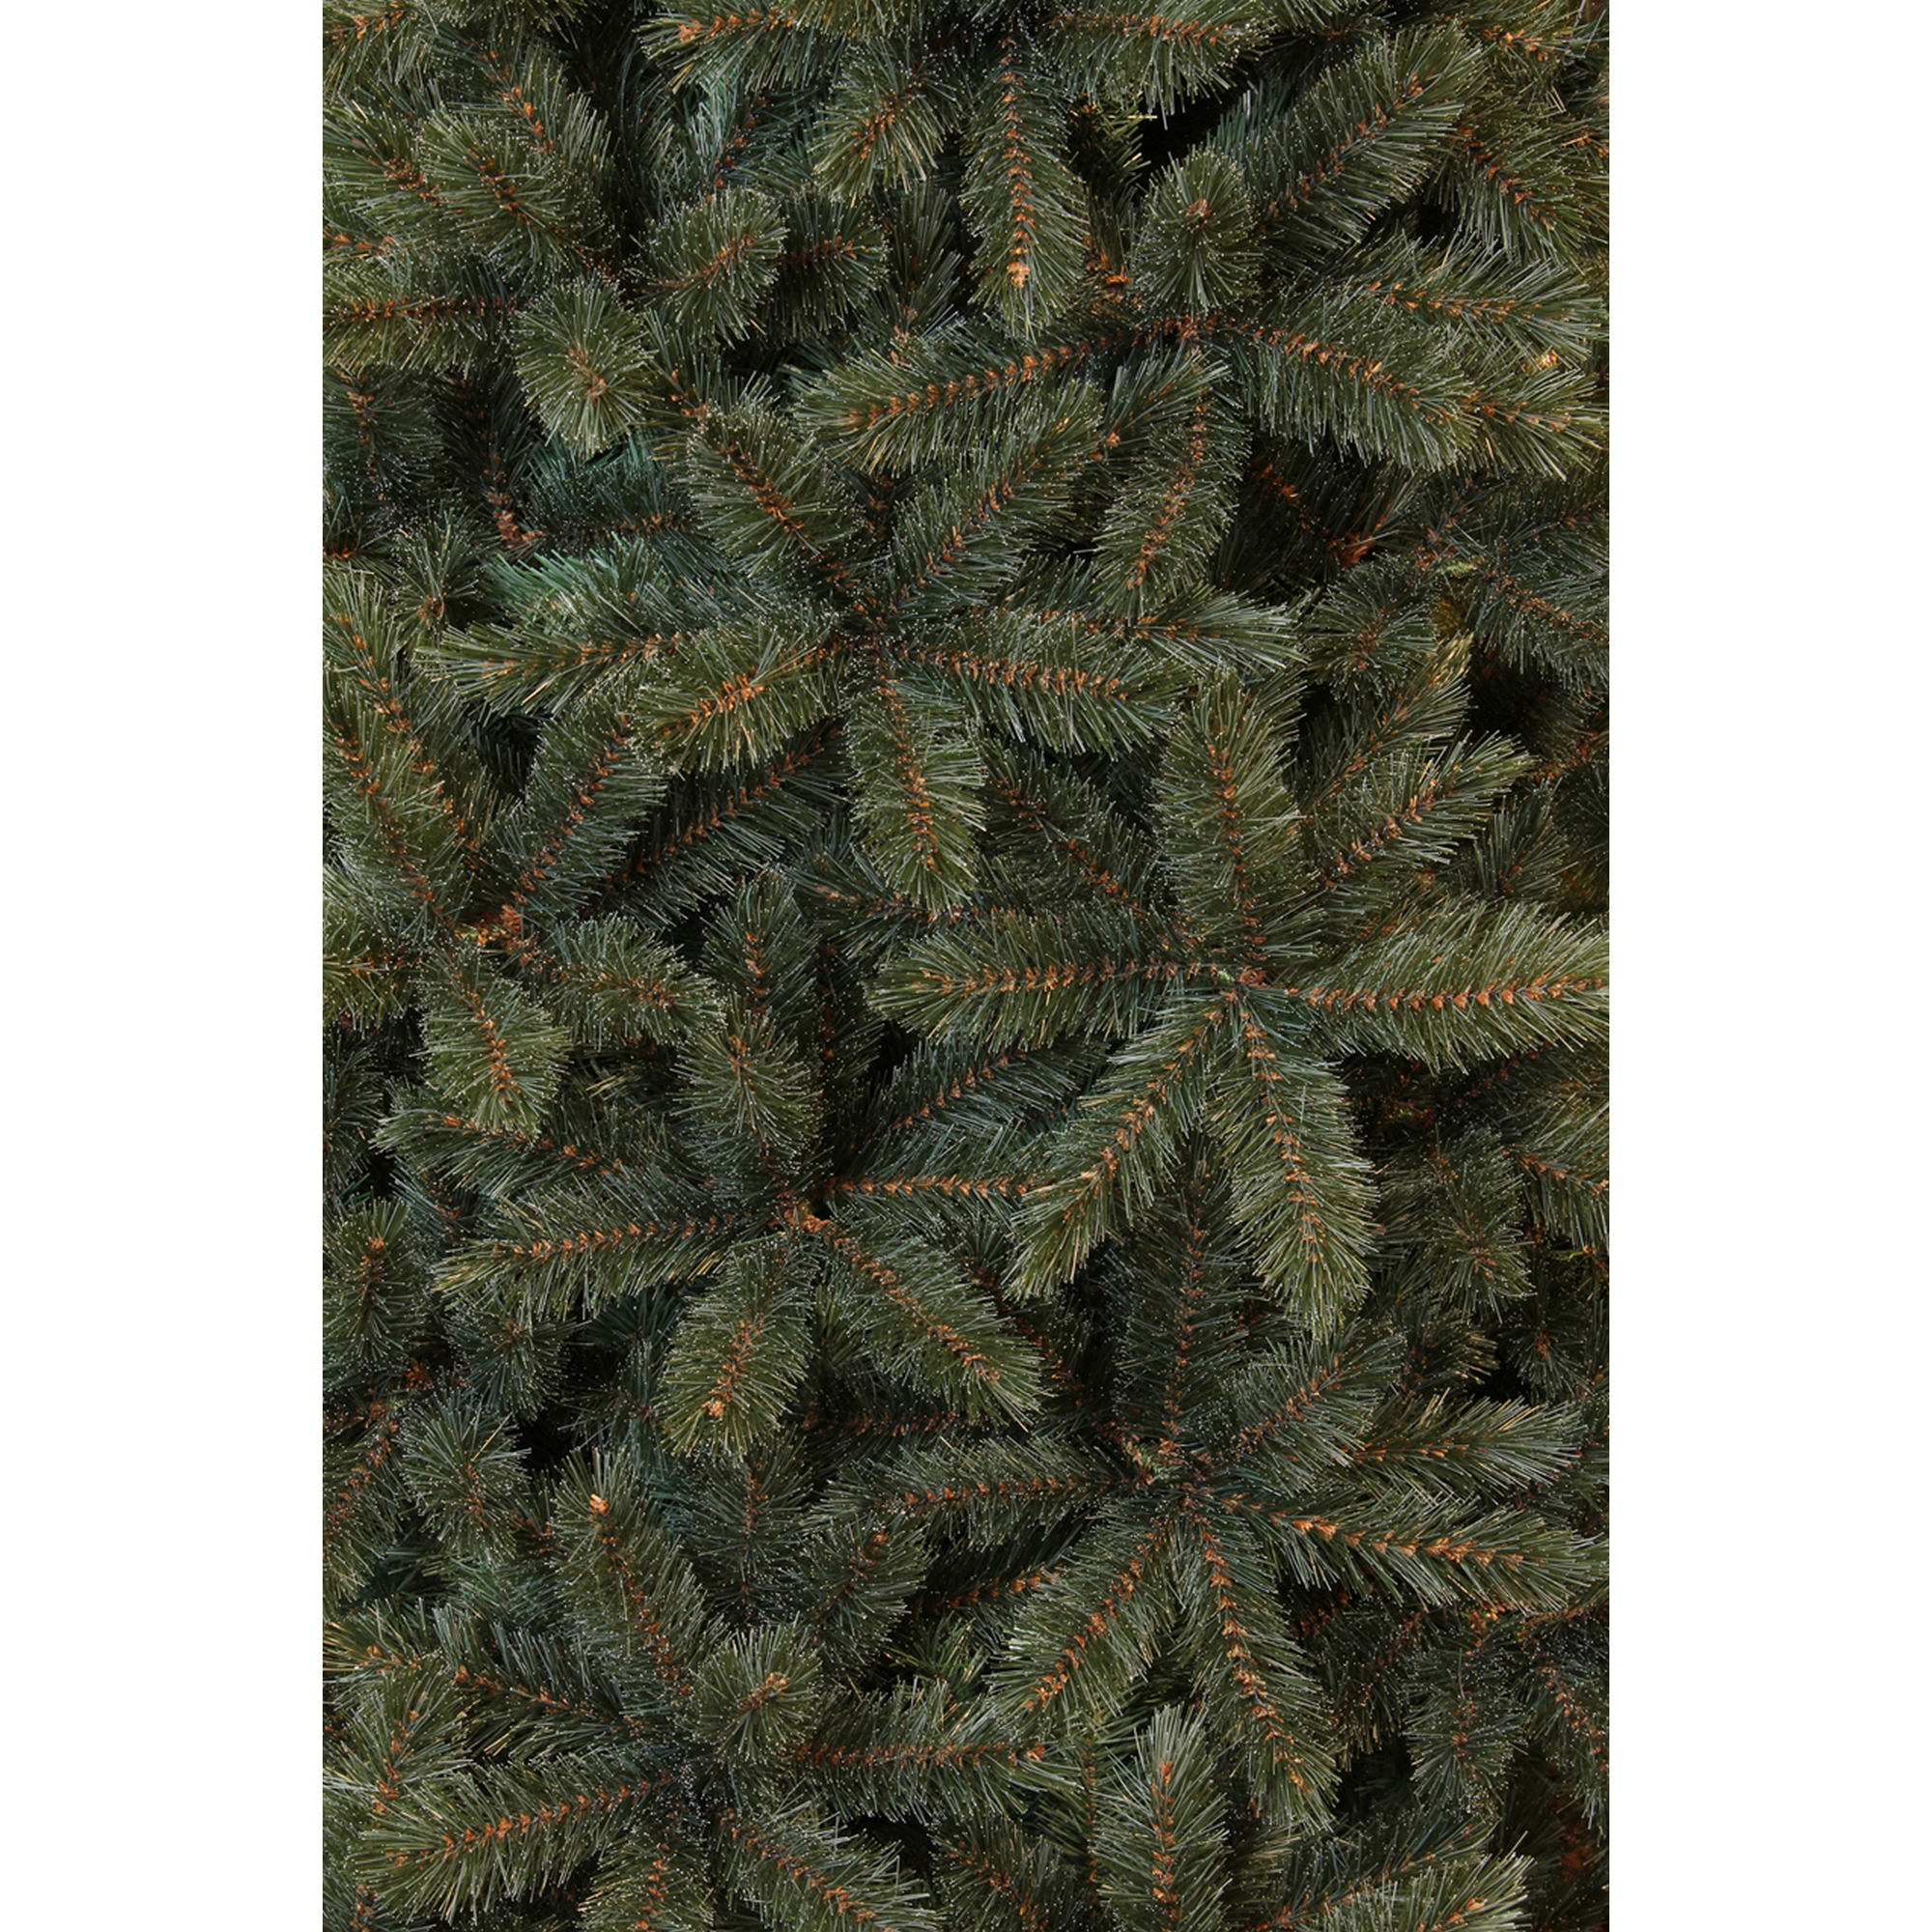 Künstlicher Weihnachtsbaum 'Forest Frosted' blau-grün 185 cm + product picture